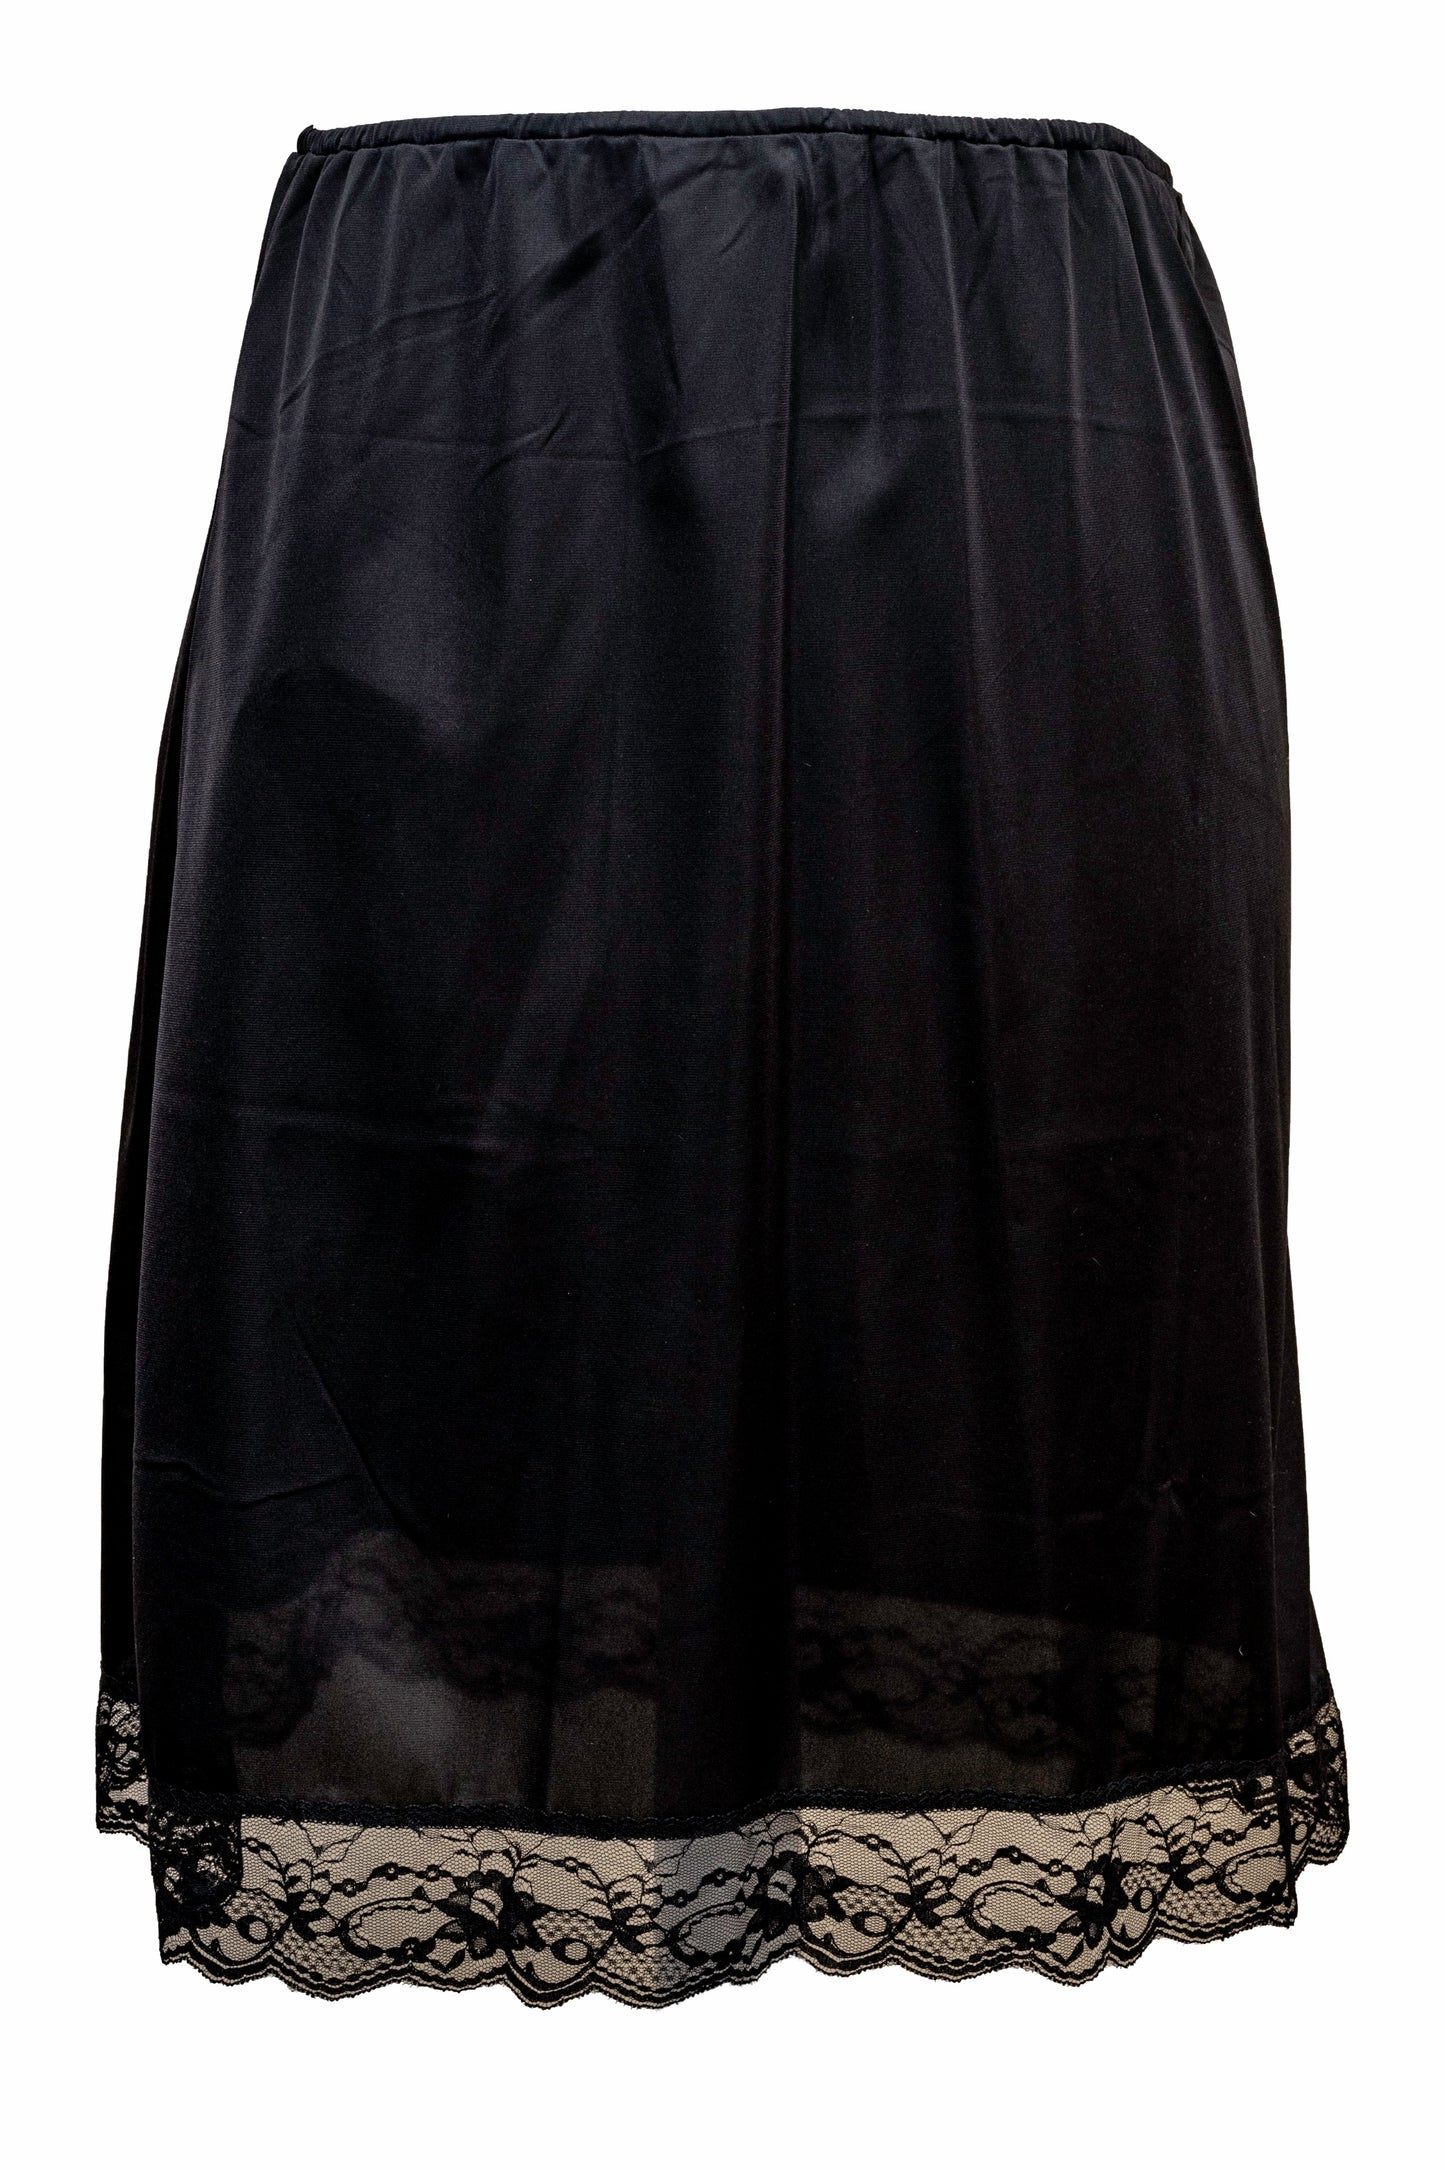 Ladies-Half Slip Petticoat-18''Length-Black